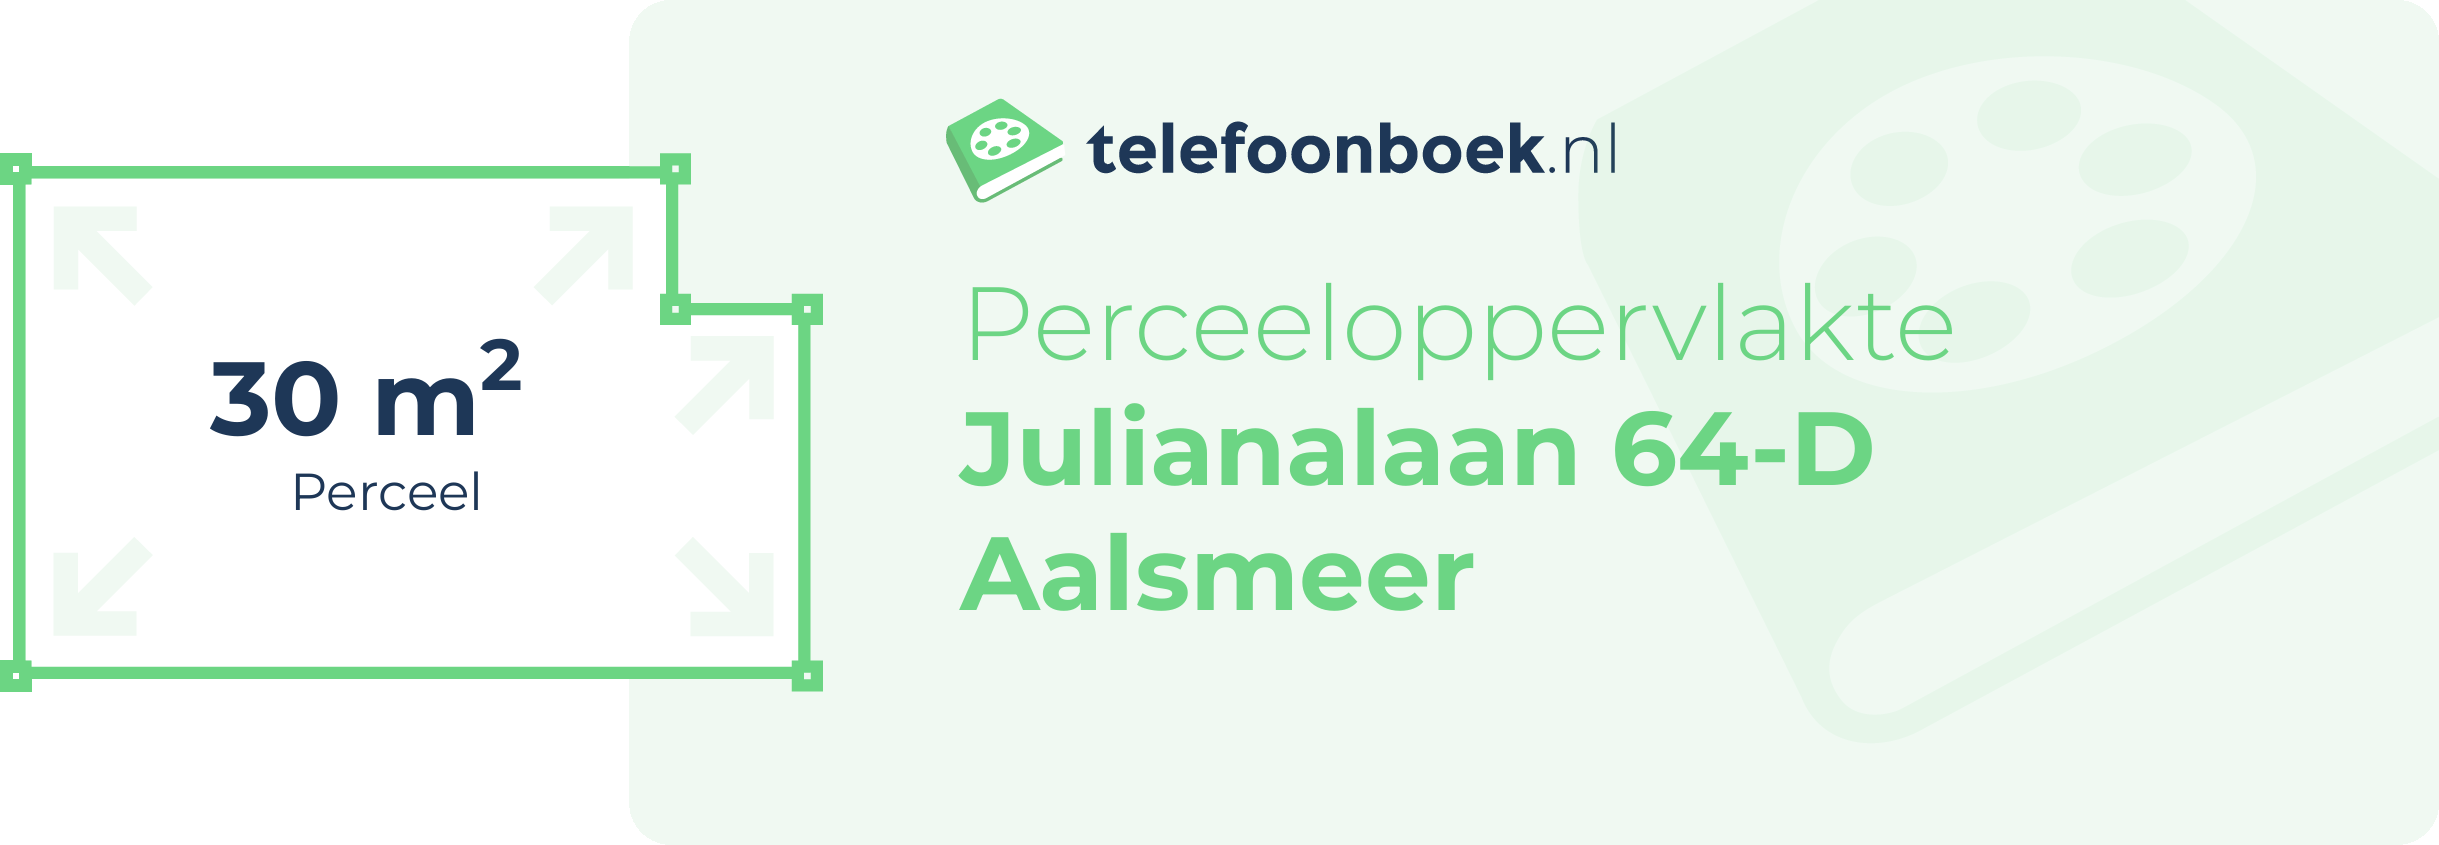 Perceeloppervlakte Julianalaan 64-D Aalsmeer